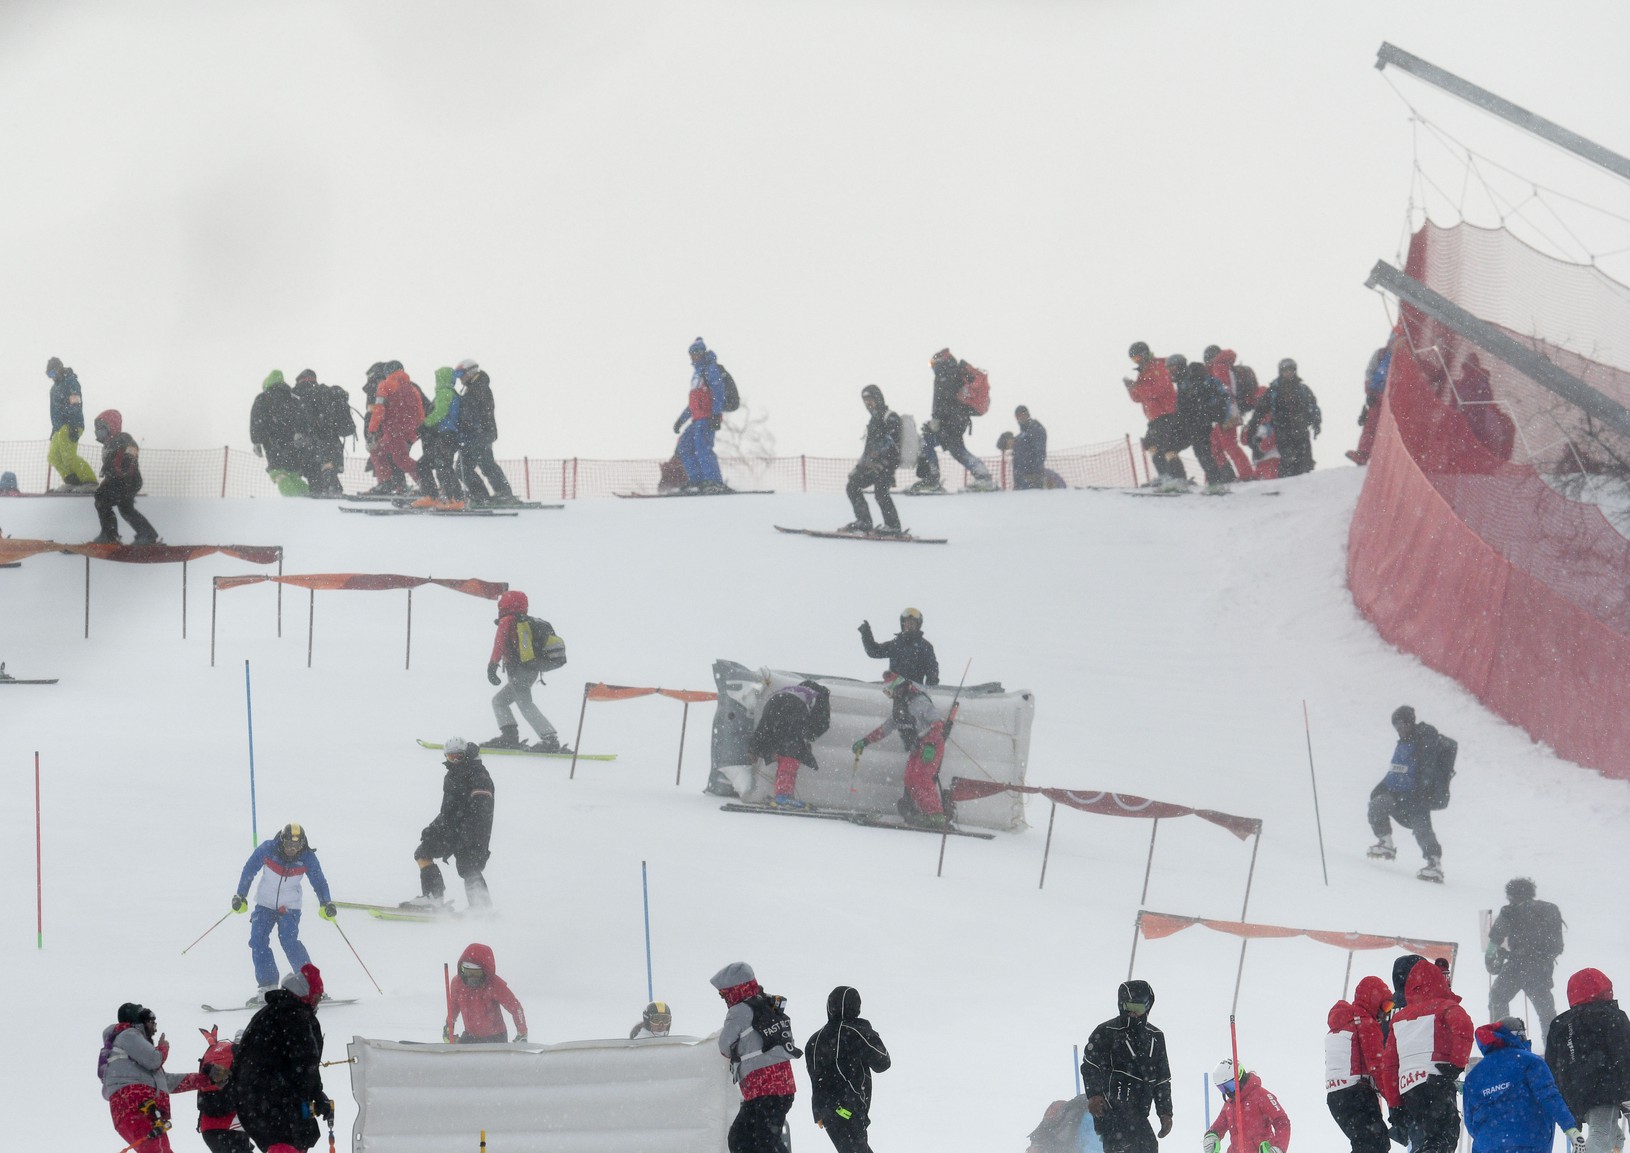 Olympijský slalom na ZOH